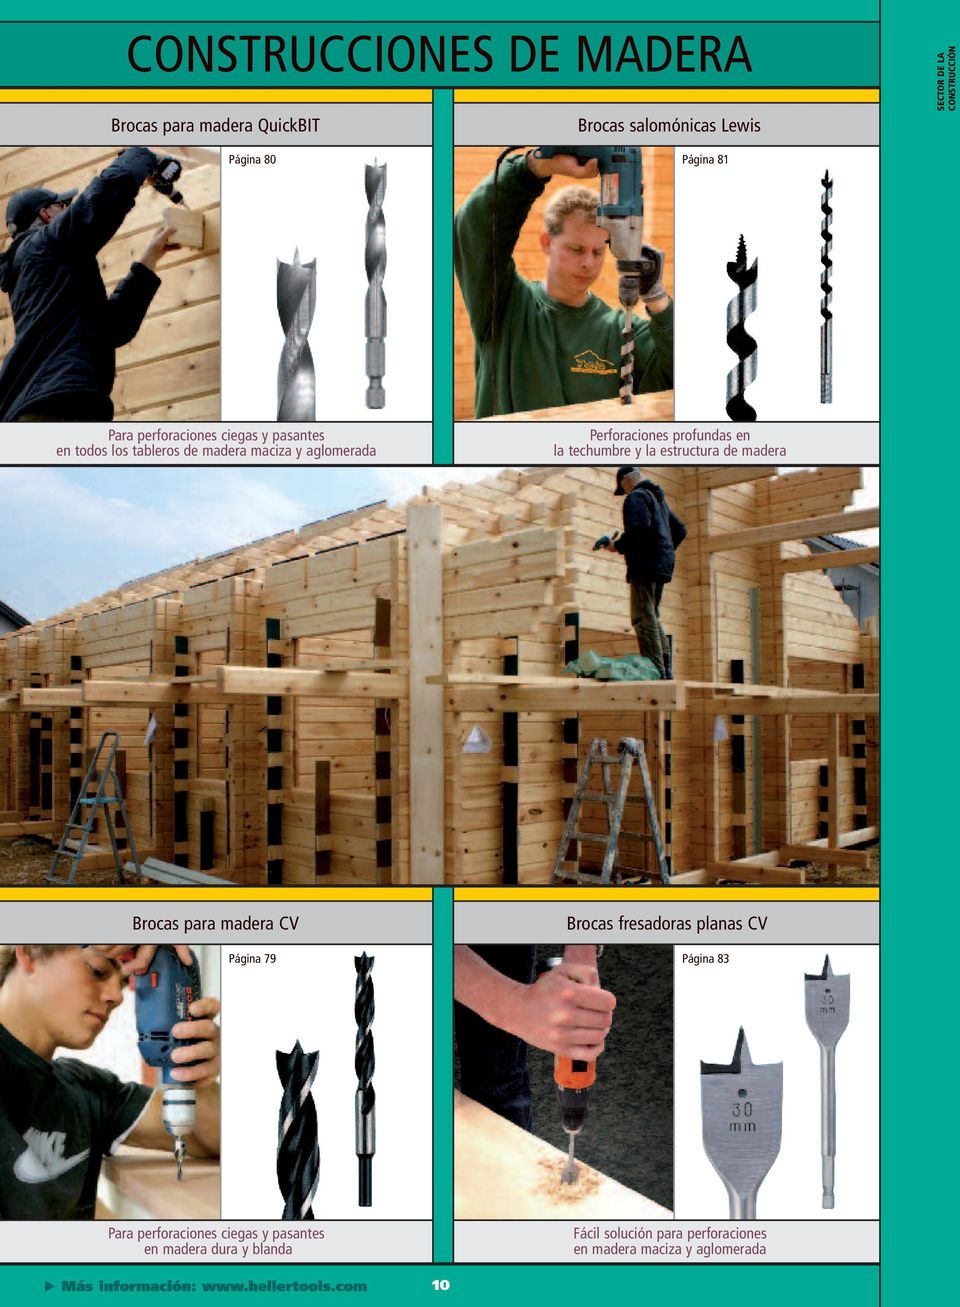 profundas en la techumbre y la estructura de madera Brocas para madera CV Brocas fresadoras planas CV Página 79 Página